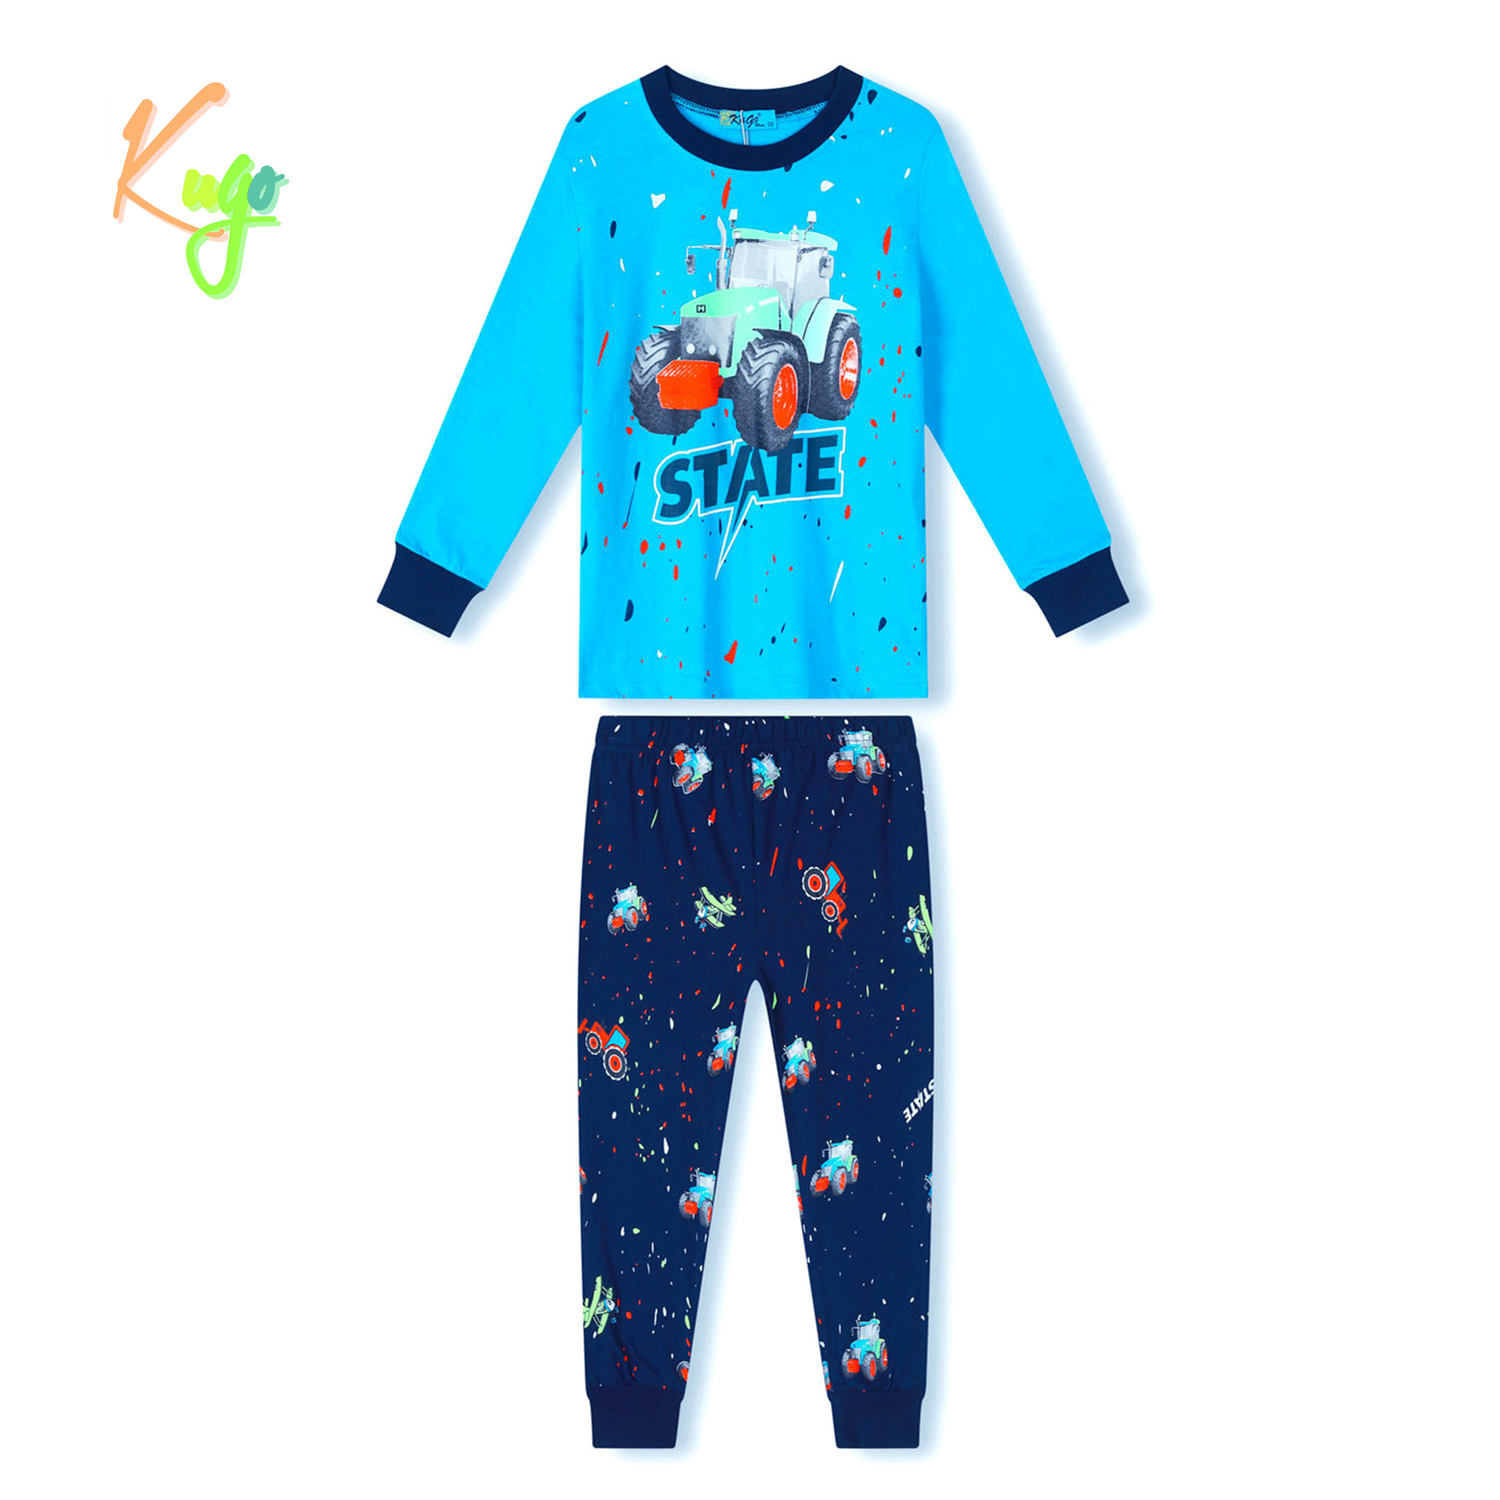 Chlapecké pyžamo - KUGO MP3779, světlonce modrá Barva: Modrá, Velikost: 116